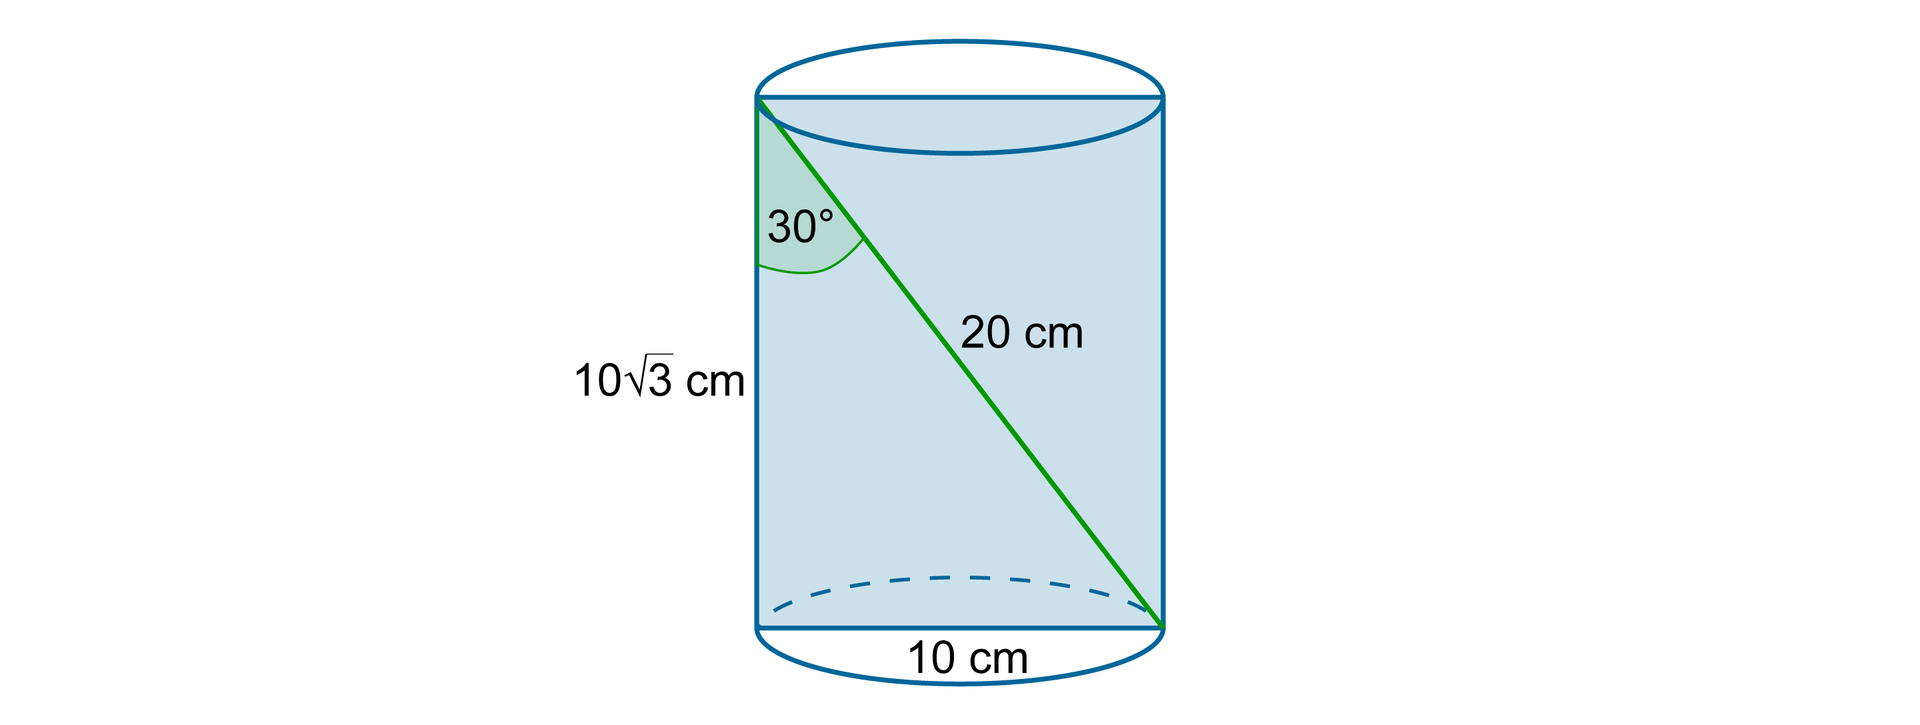 Rysunek walca z zaznaczonym przekrojem osiowym w kształcie prostokąta podzielonego przekątną na dwa trójkąty prostokątne. Przeciwprostokątna trójkąta ma długość 20 cm. Krótsza przyprostokątna leży naprzeciwko kąta o mierze 30 stopni i jest równa 10 cm a druga przyprostokątna ma długość 10 pierwiastków z trzech cm.